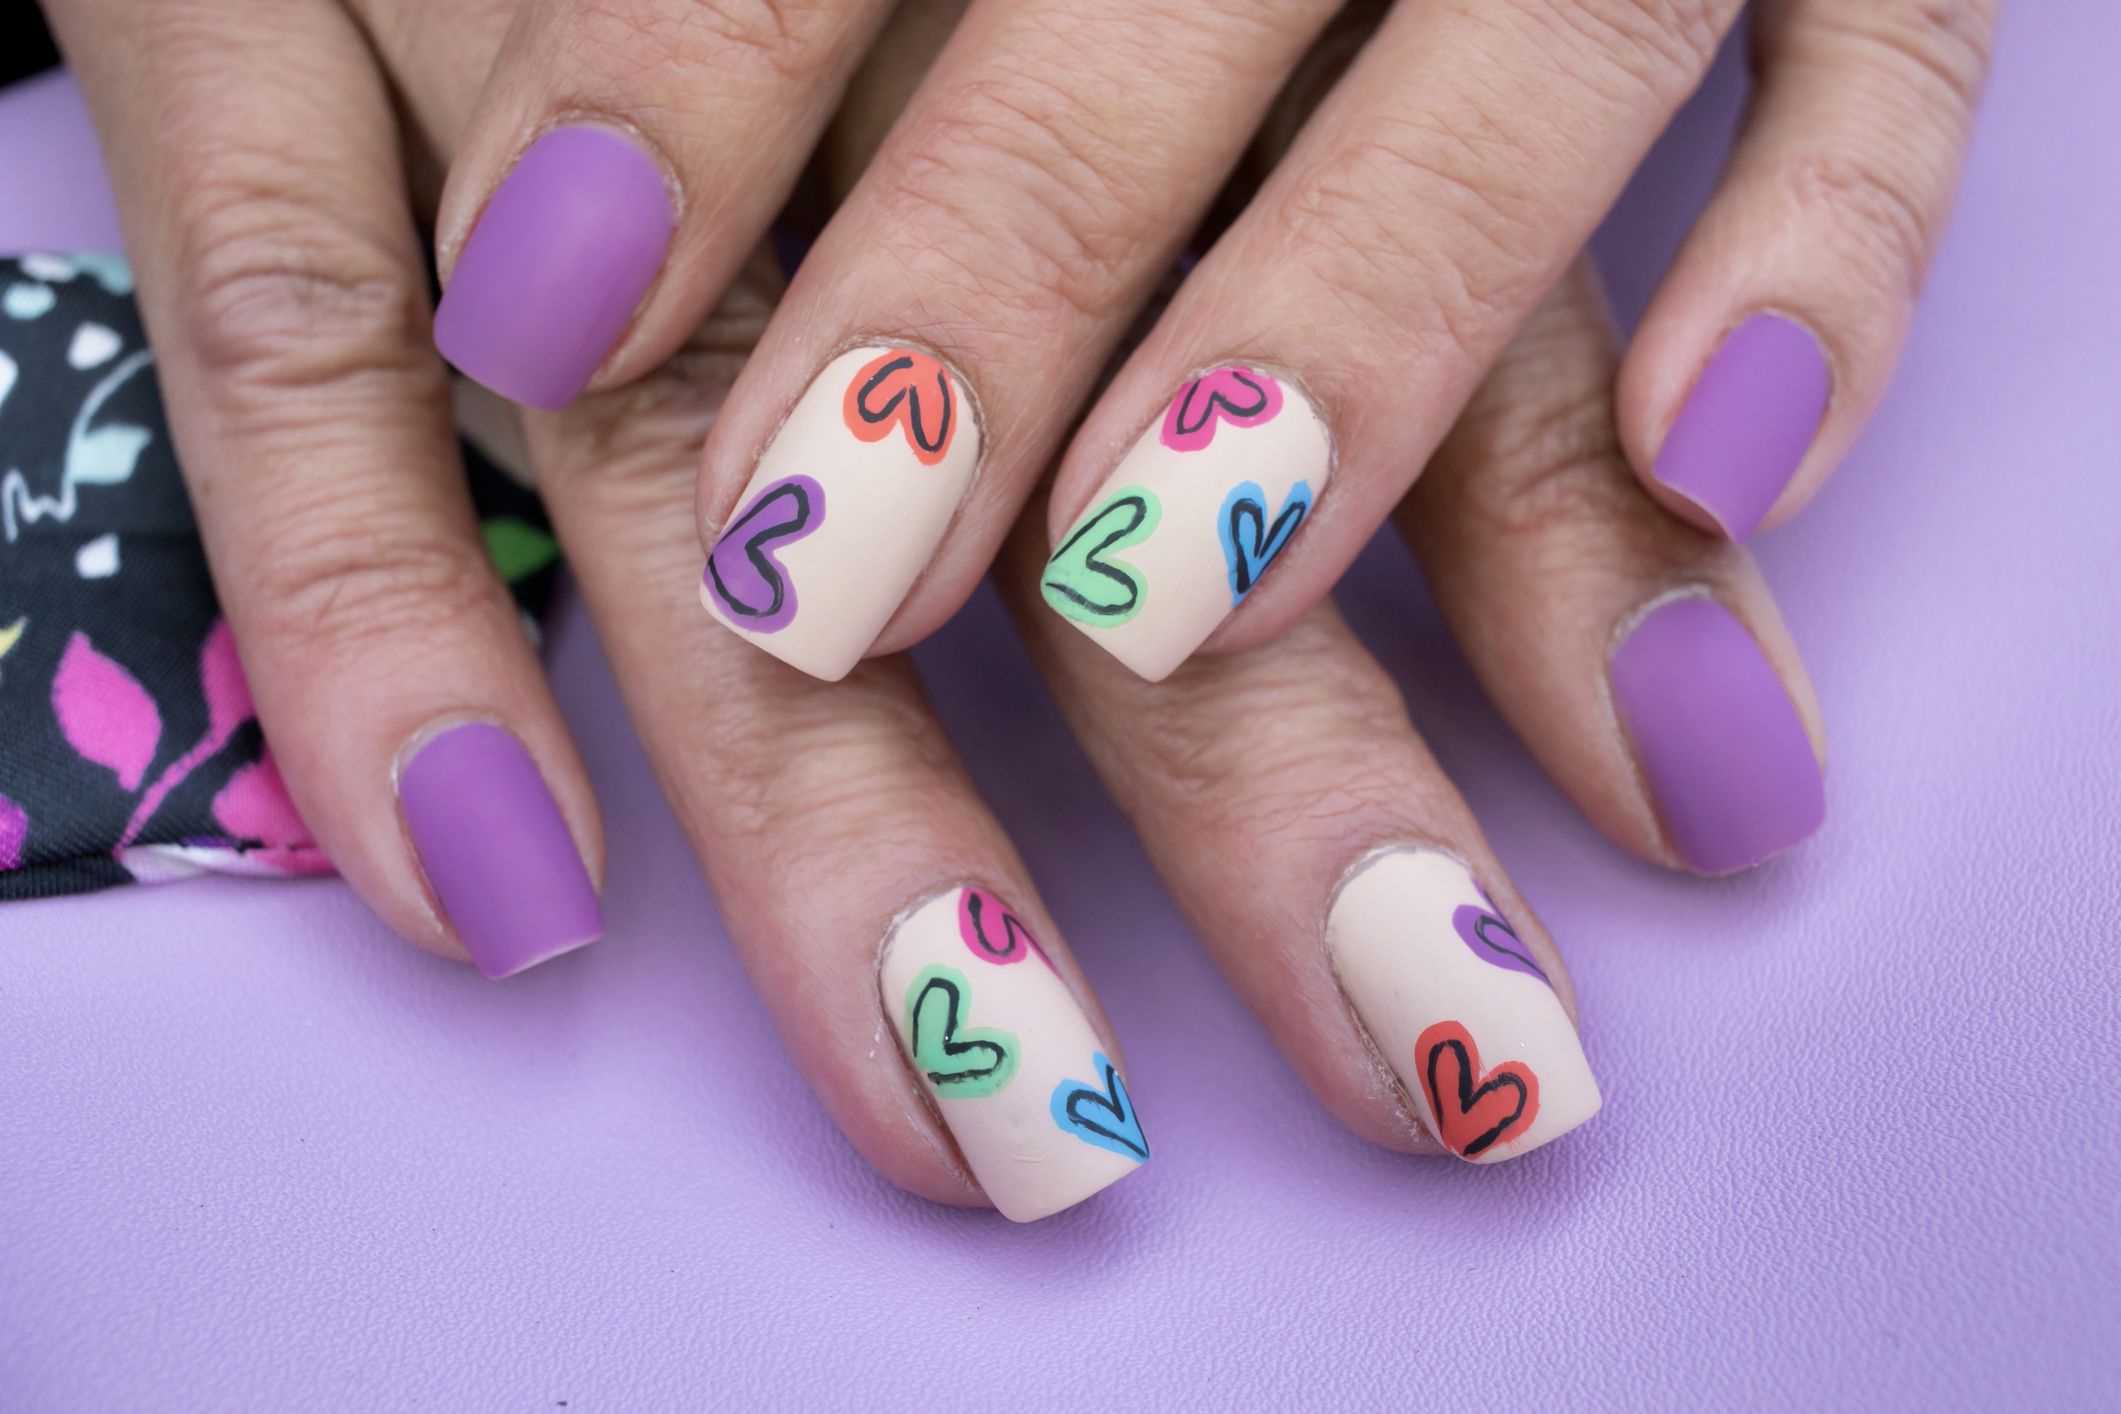 Colorful nails, Fun summer nails, Nails with orange color, Sandy nails,  Short nail designs 2016, Summer nails… | Nail art design gallery, Nail  colors, Cool nail art